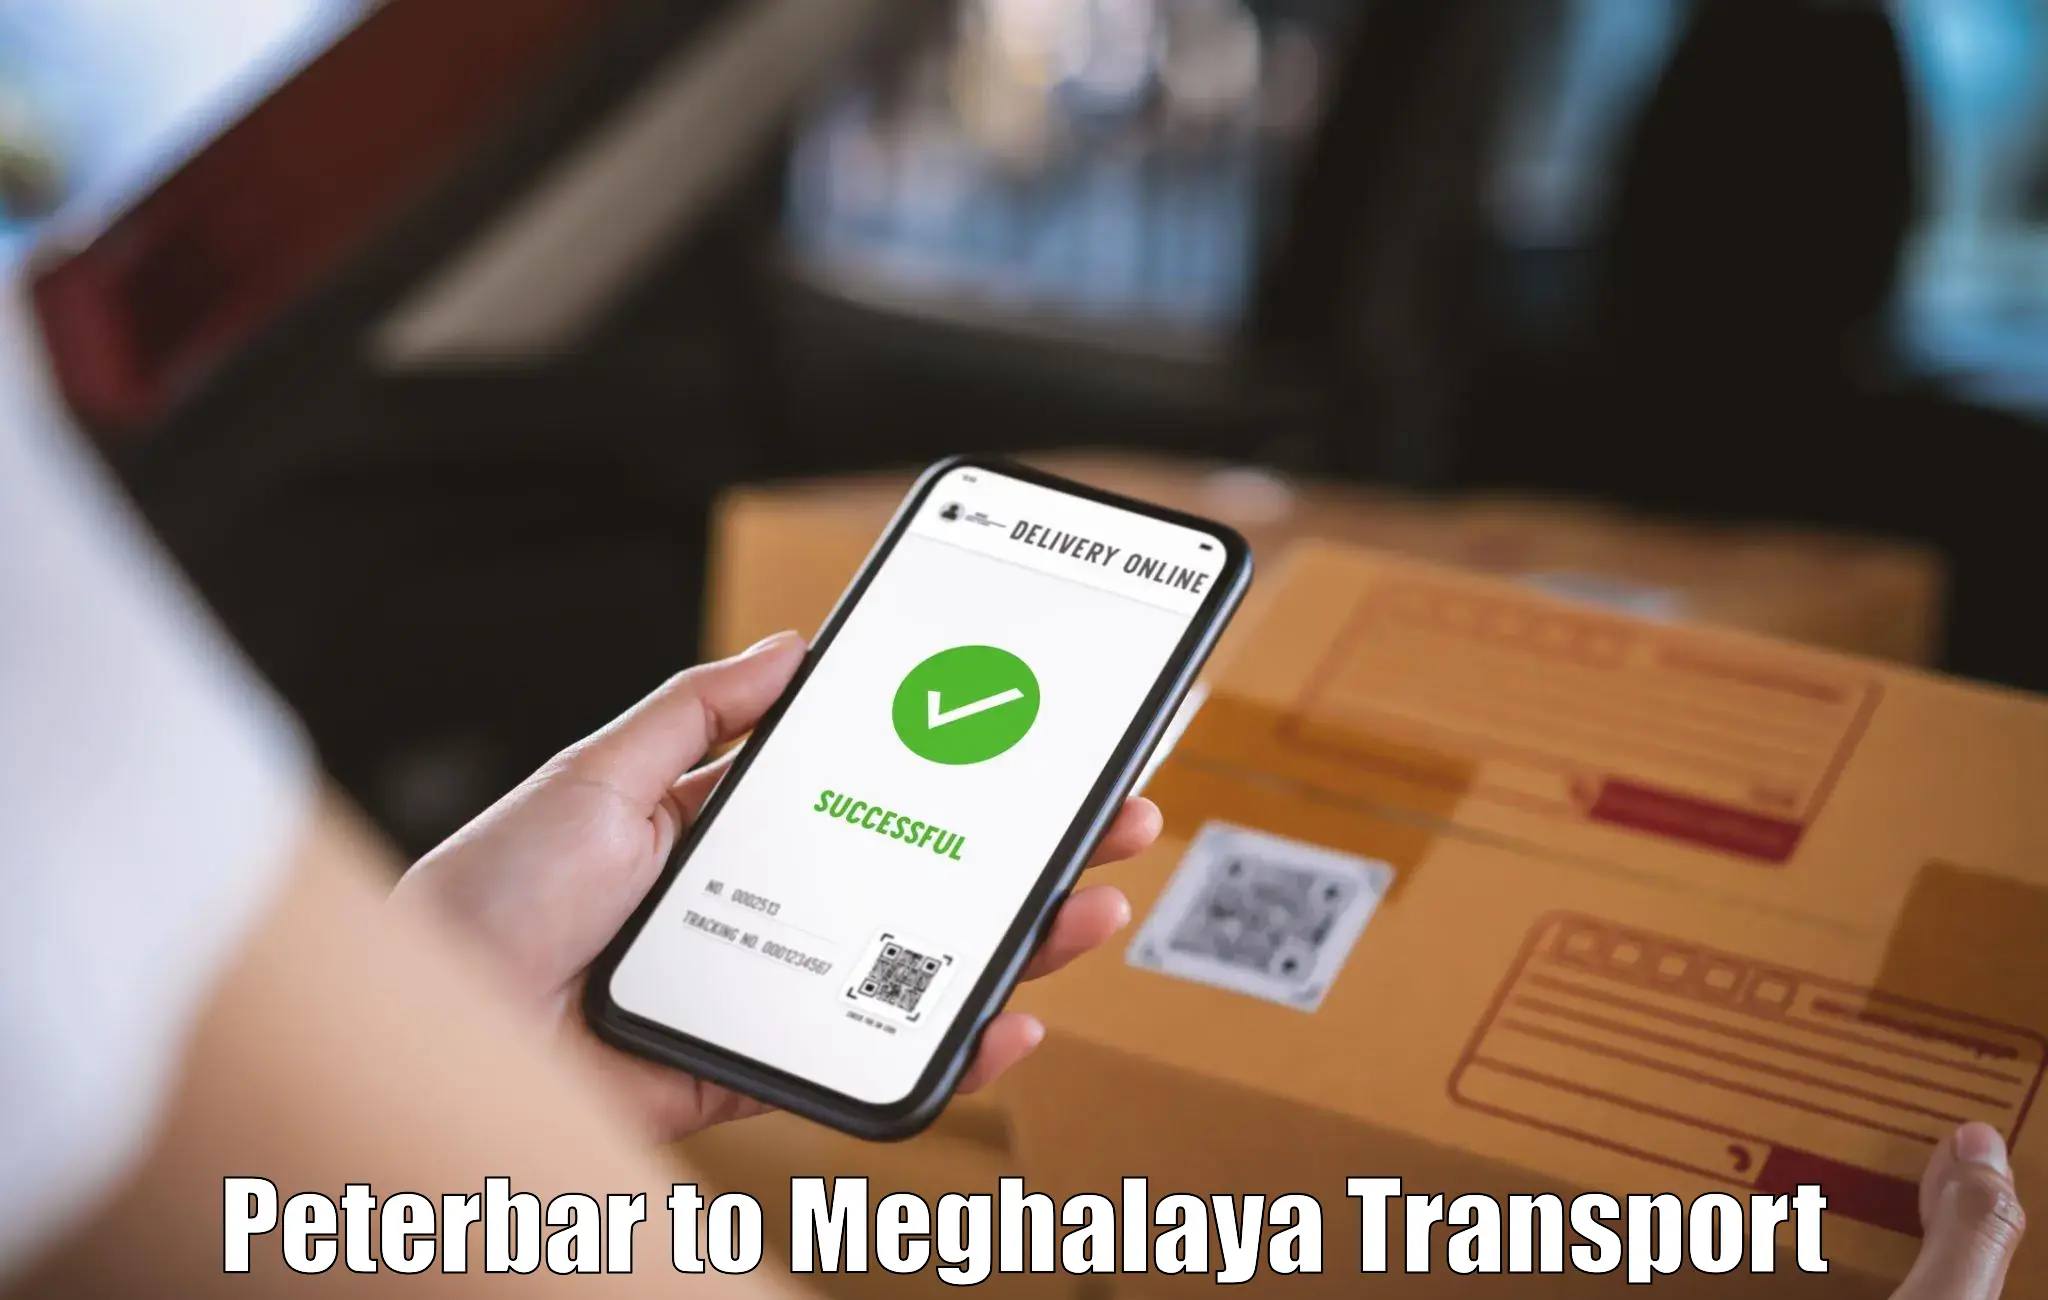 Online transport booking Peterbar to Ri Bhoi